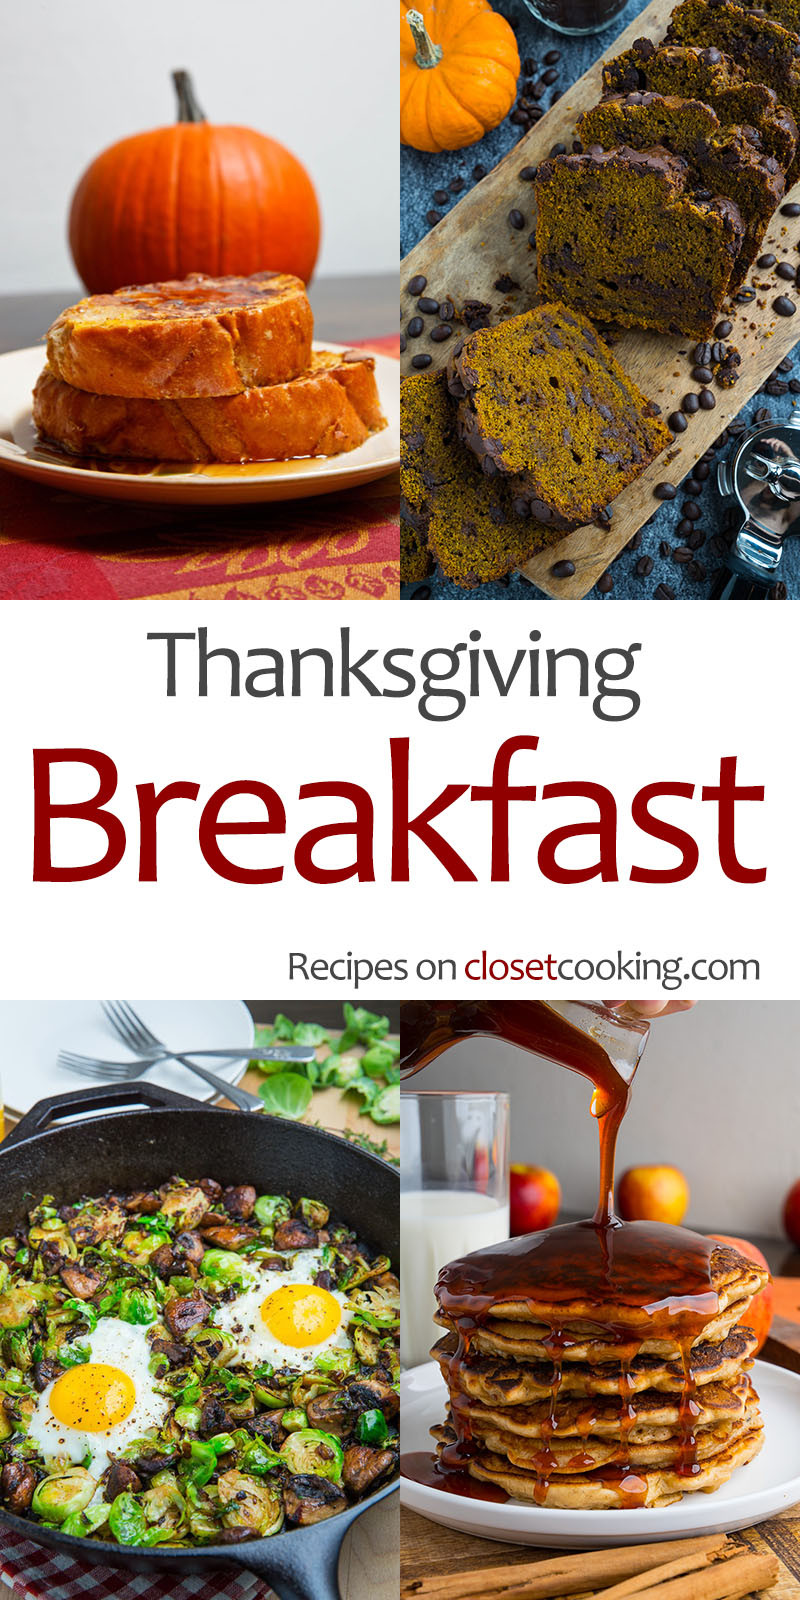 Thanksgiving Breakfast Menus
 Thanksgiving Breakfast Recipes Closet Cooking